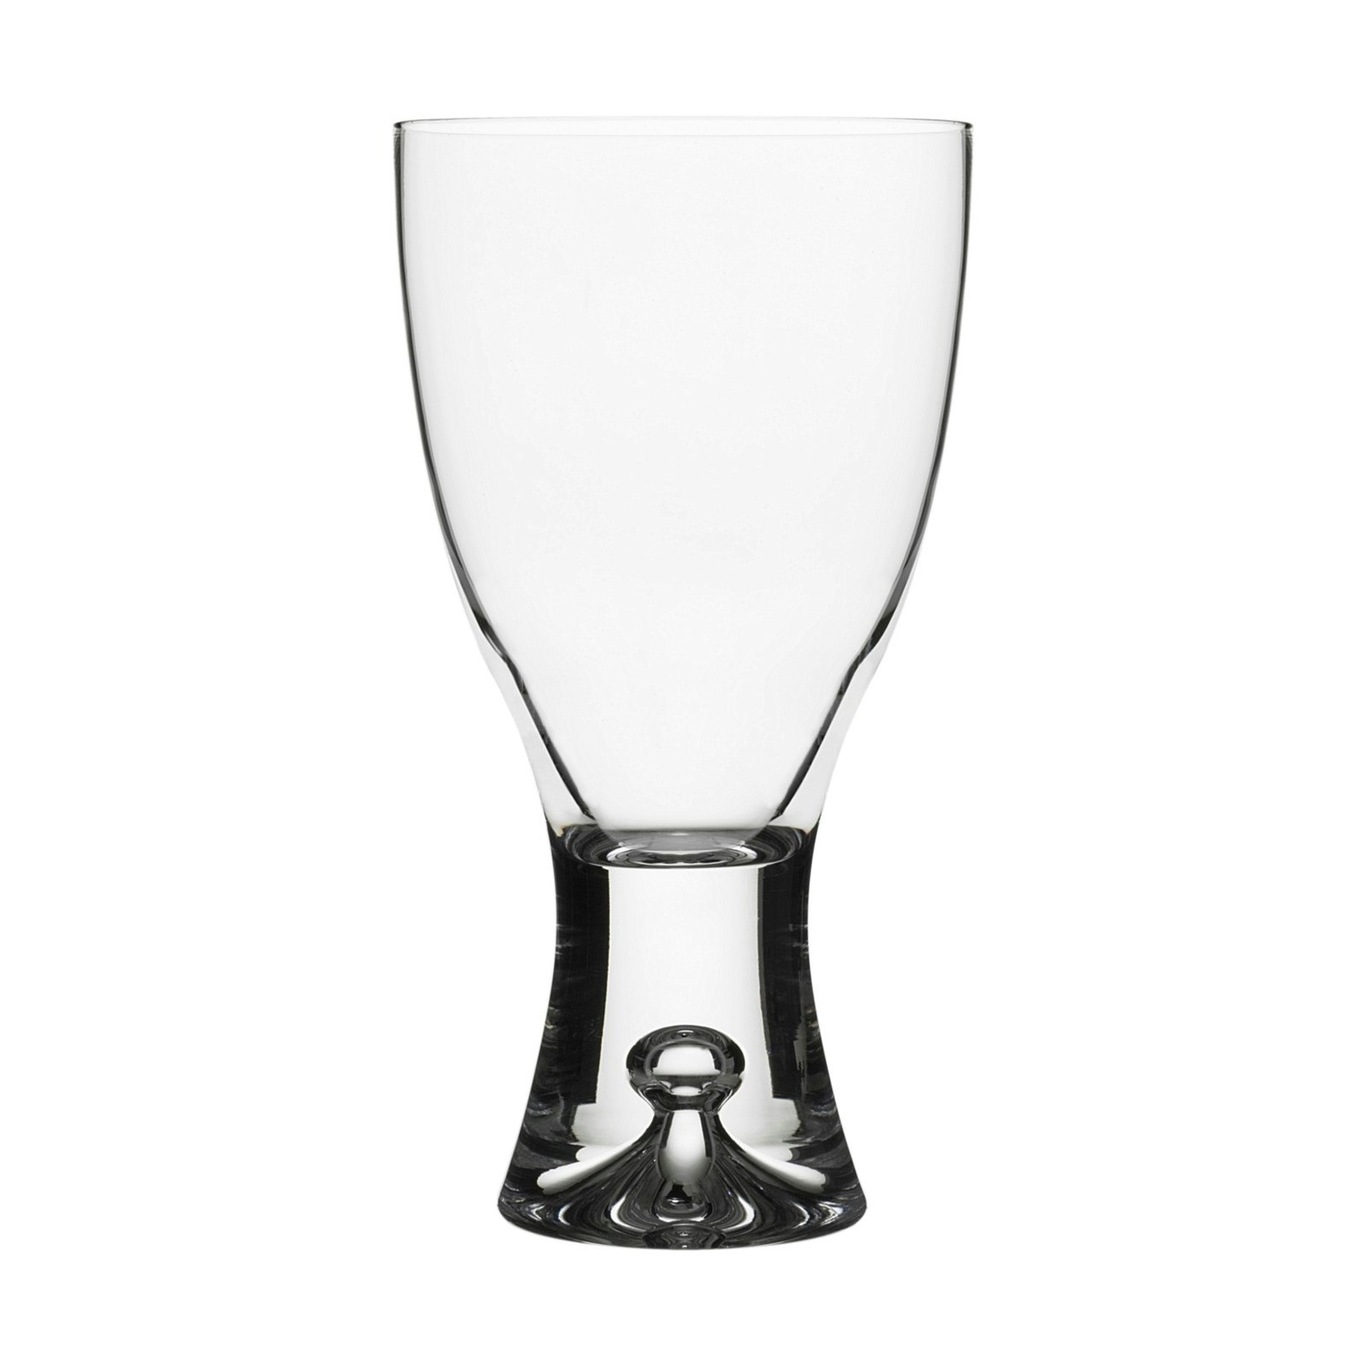 Tapio Rodewijnglas, 25 cl 2 stk